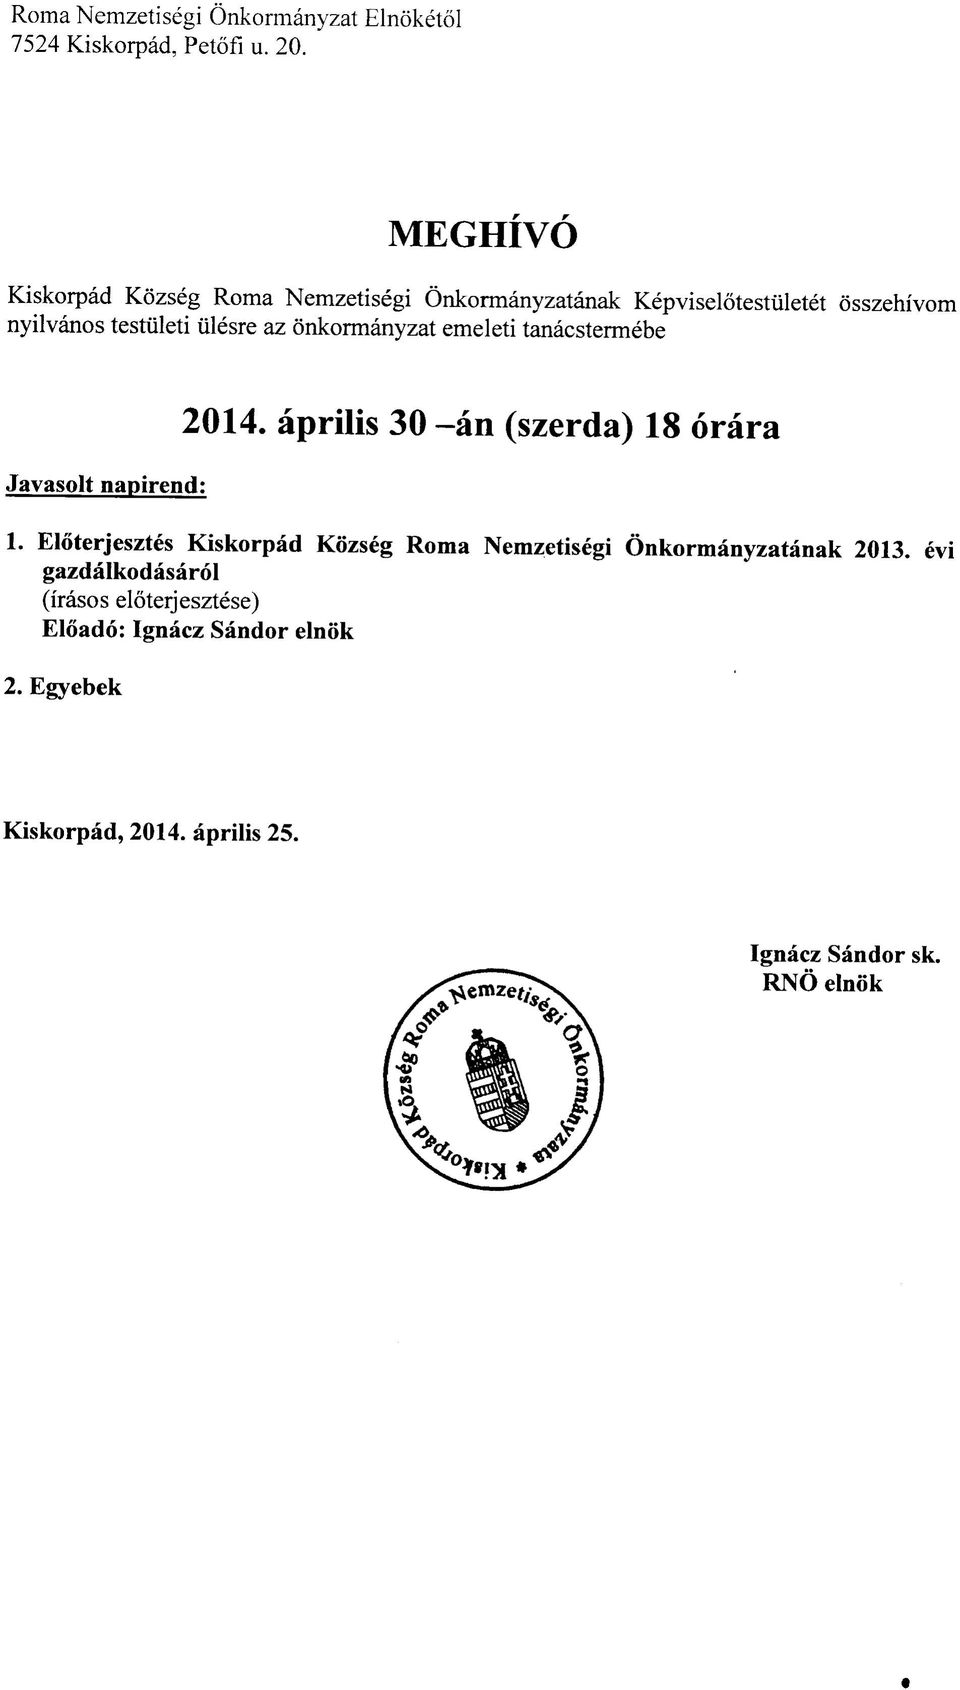 onkormanyzat emeleti tanacstermebe Javasolt napirend: 2014. aprilis 30 -an (szerda) 18 orara 1.